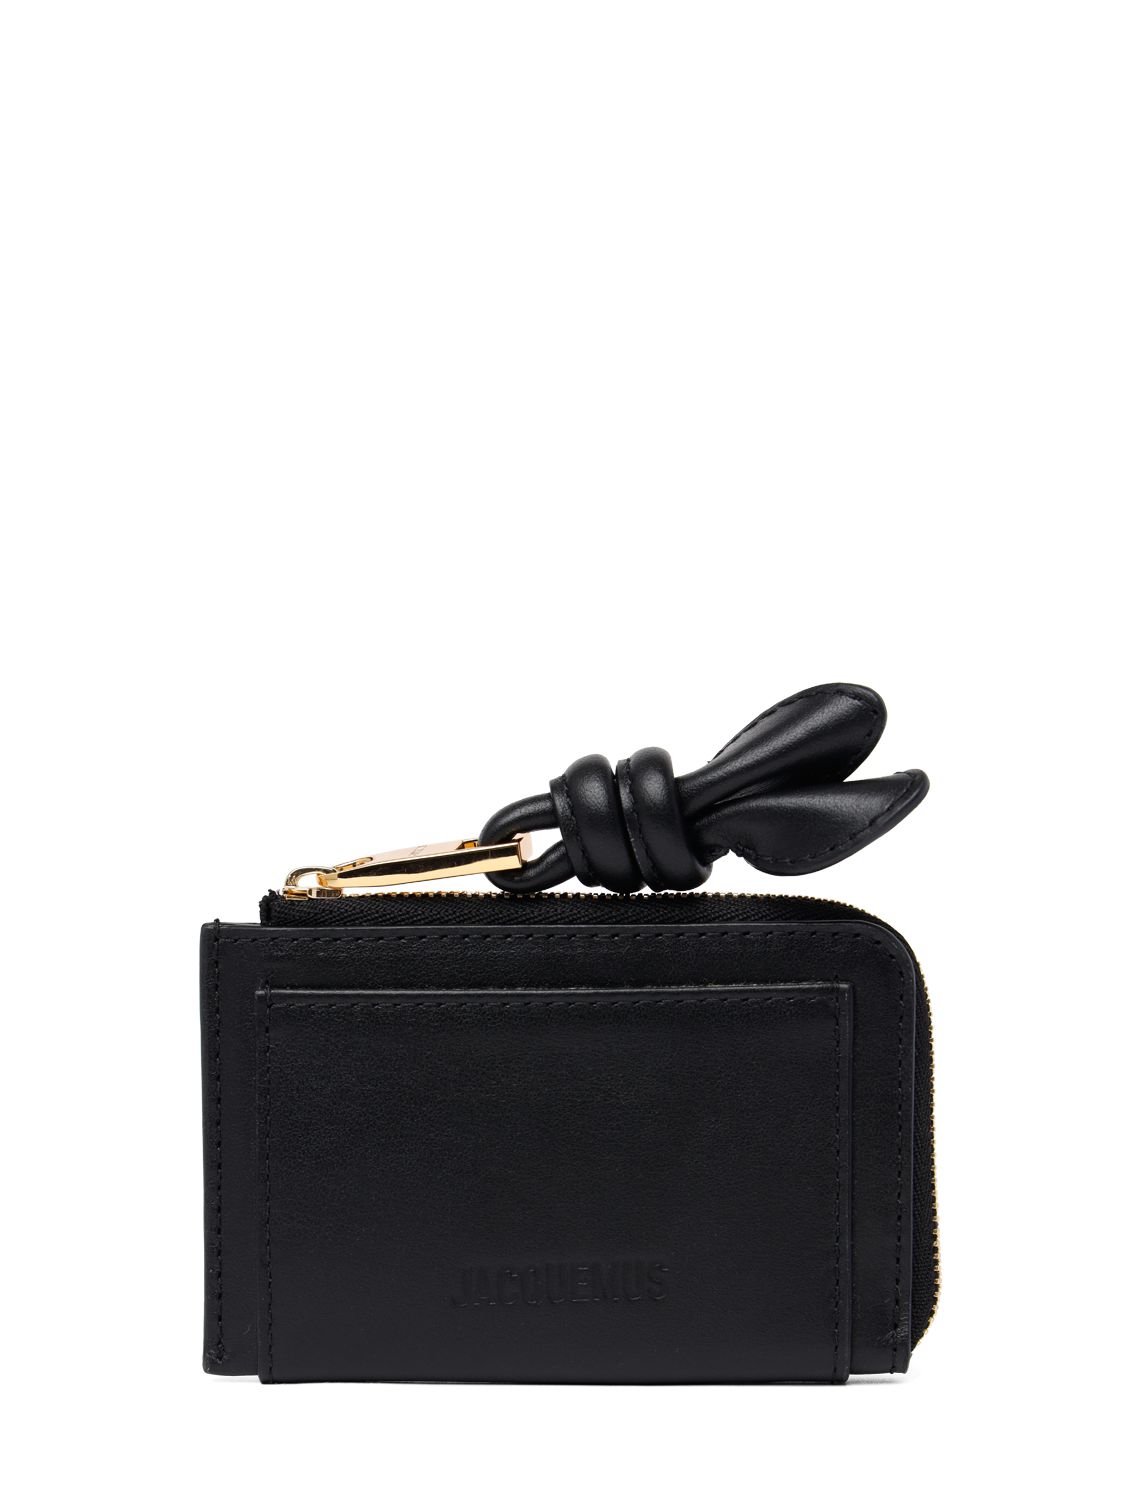 Jacquemus Le Porte-cartes Tourni Leather Wallet In Black